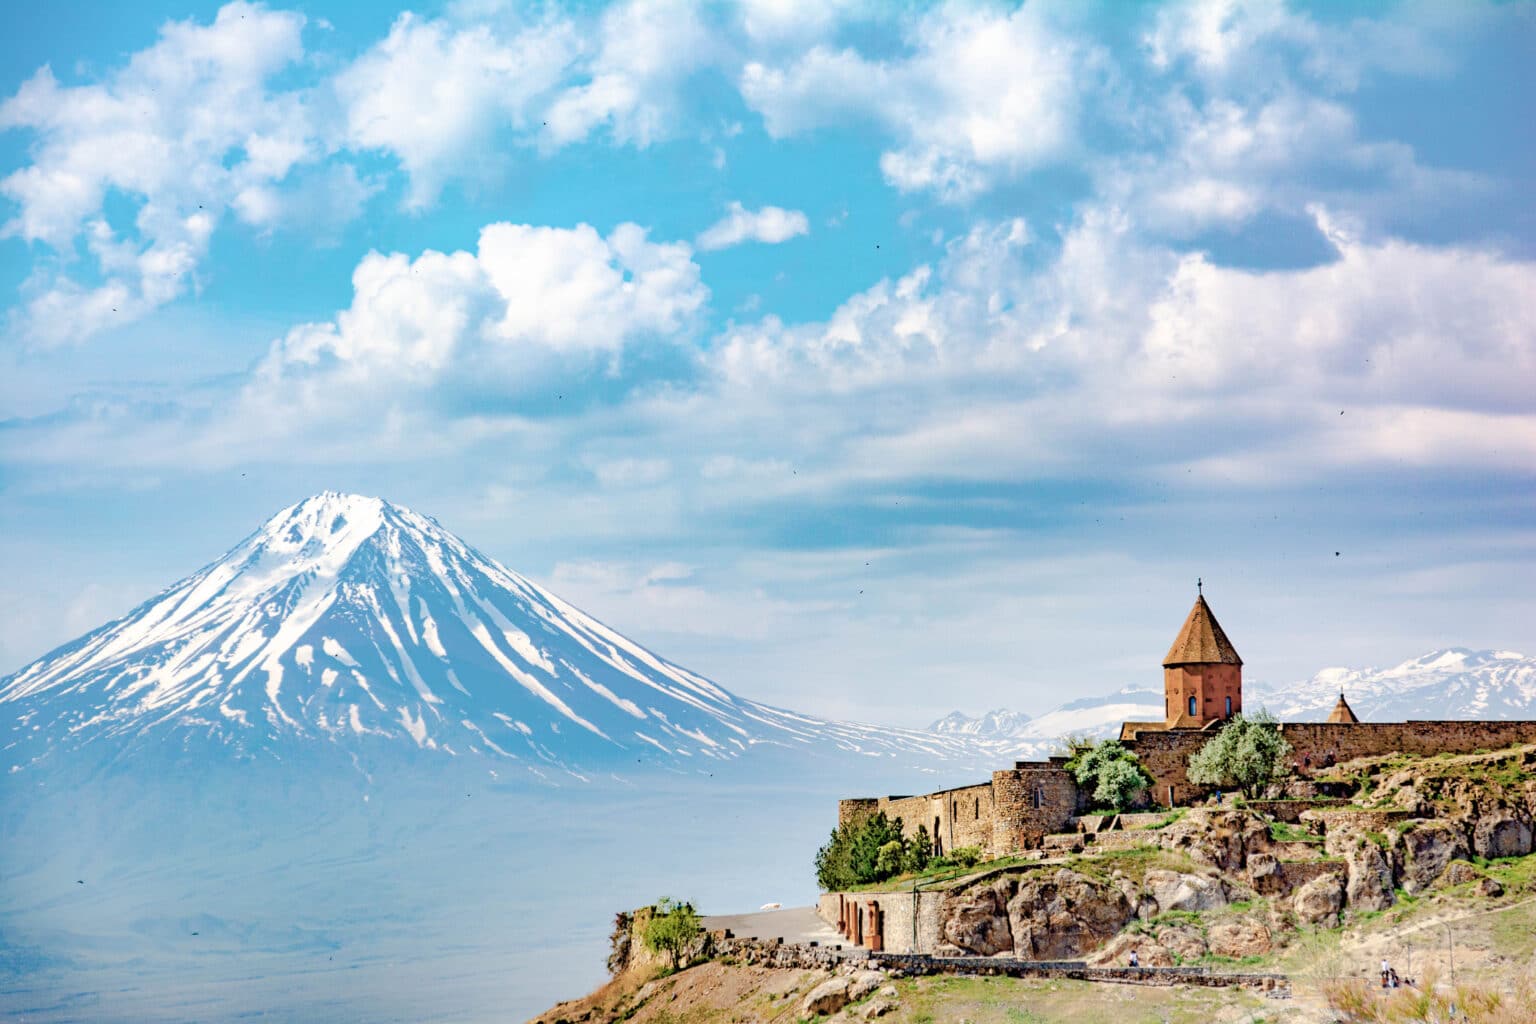 Monastyr Khor Virap, Armenia